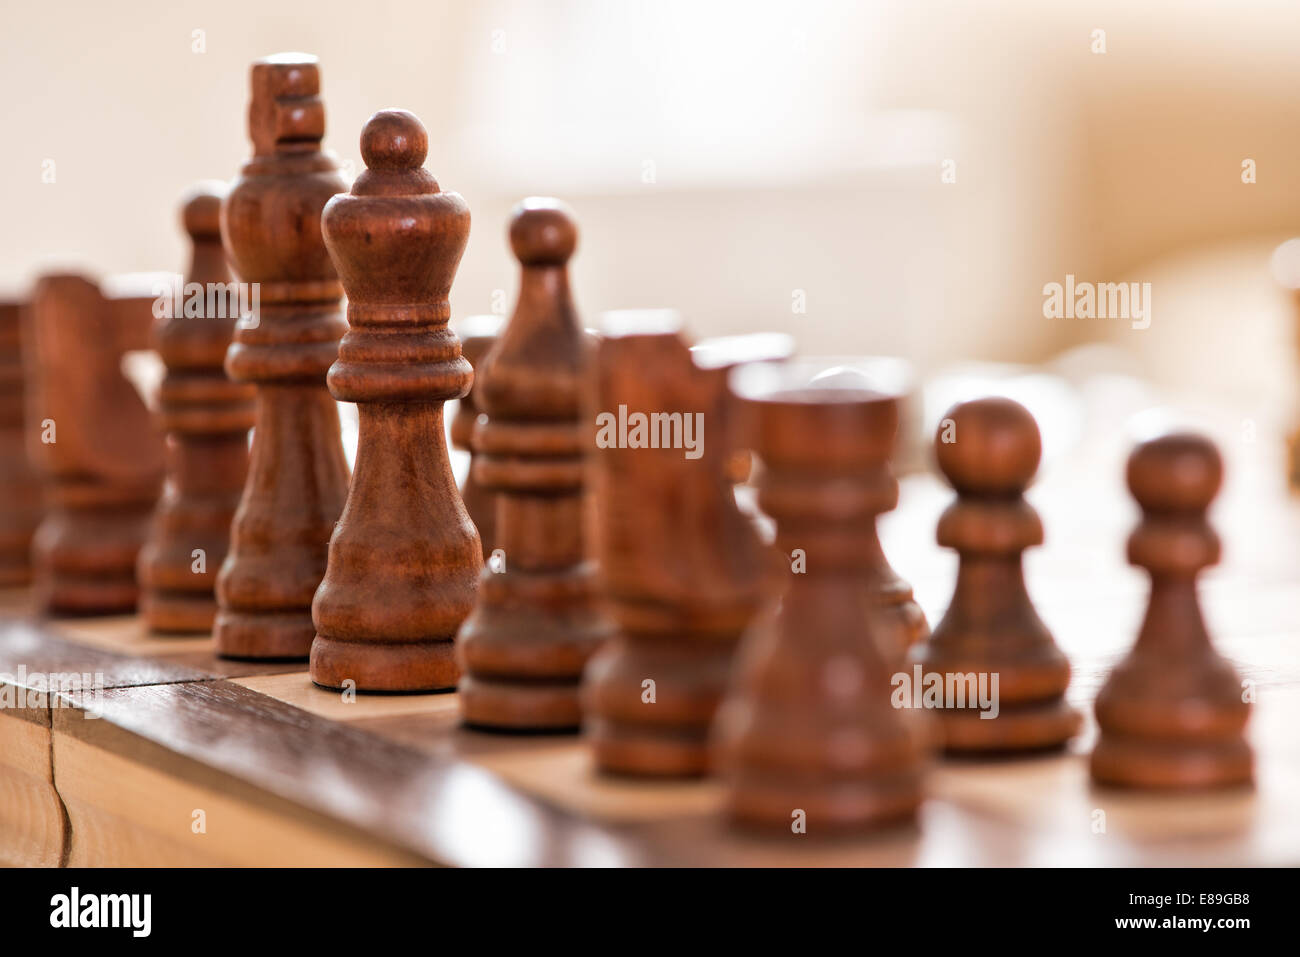 Piezas de ajedrez de madera hacia fuera, a través de la junta de juegos durante un partido Foto de stock